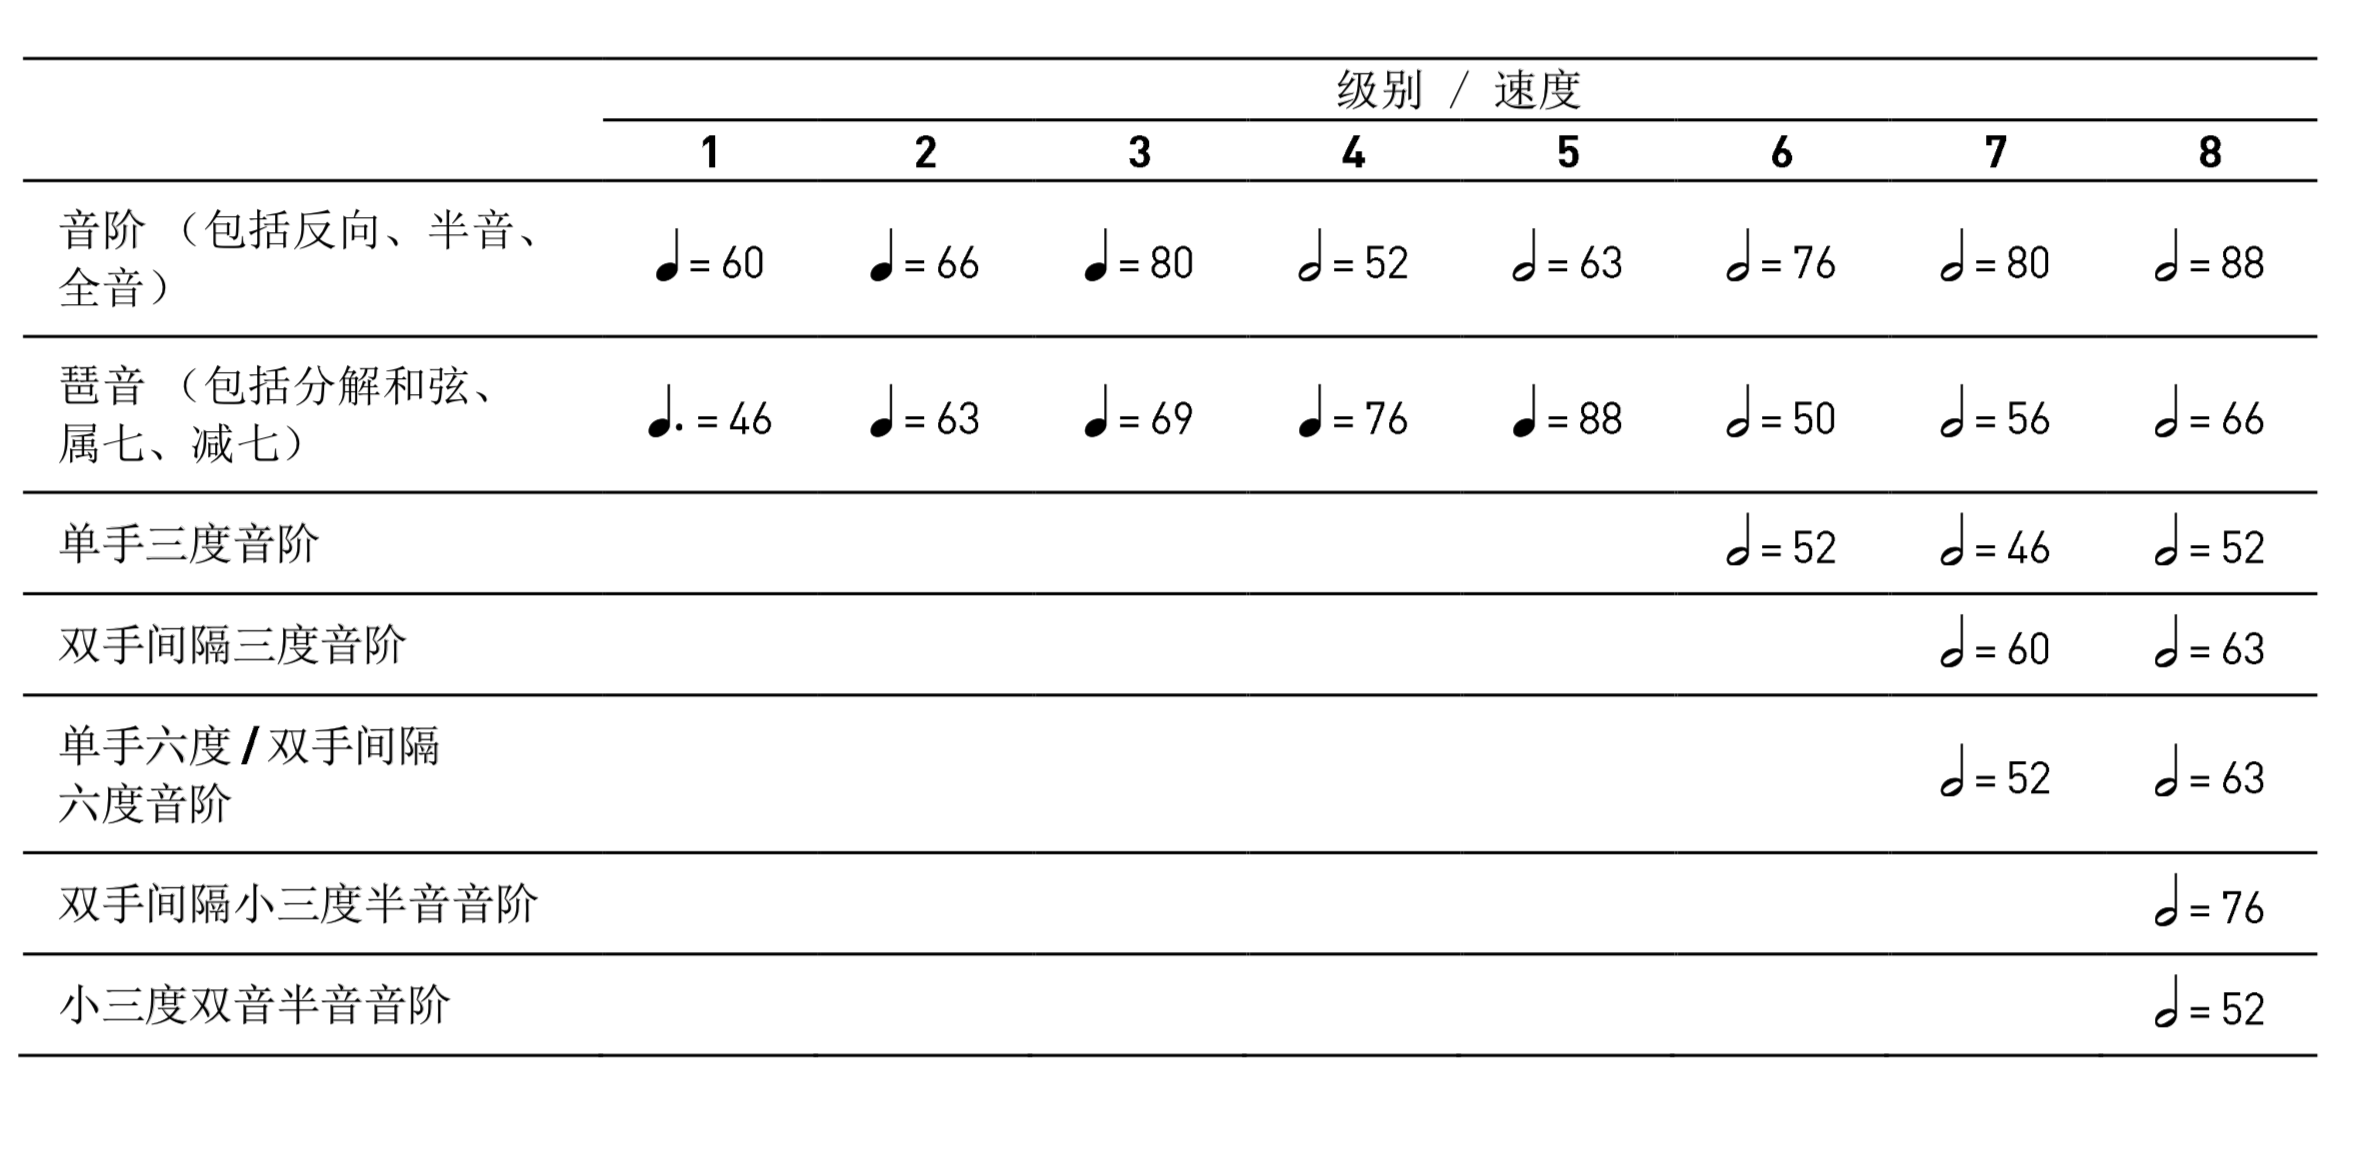 1,背谱弹奏 2,根据指定的音域(和音型)进行上行和下行弹奏 3,连奏